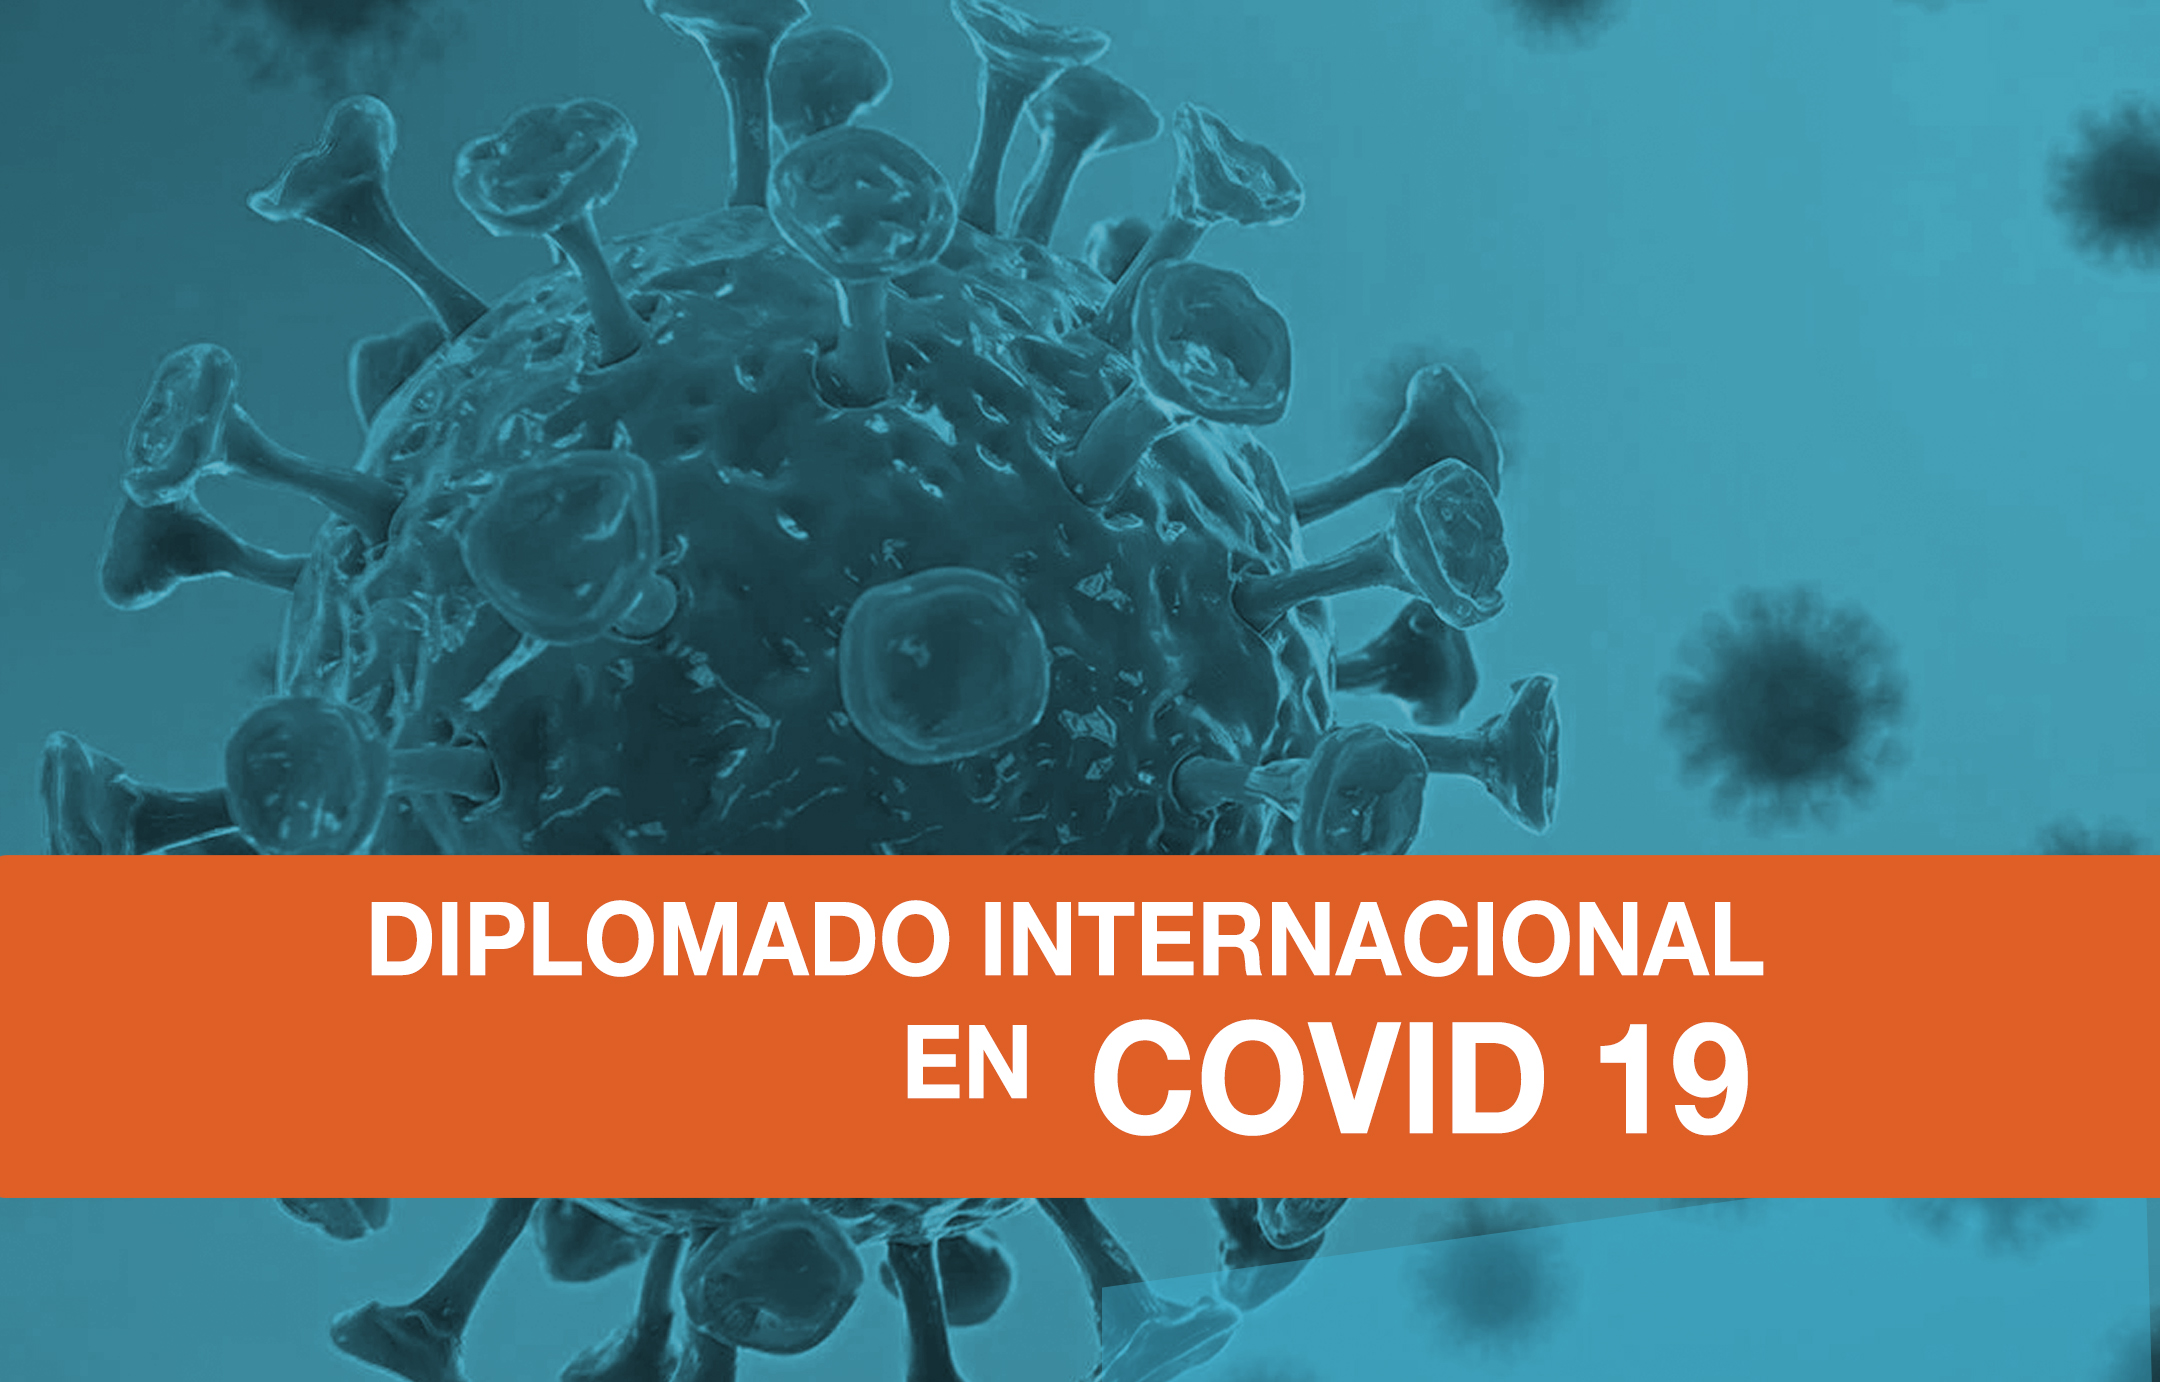 DIPLOMADO INTERNACIONAL EN COVID 19 - ESPECIALIZACION EN MANEJO INTEGRAL DE PACIENTES CRITICOS